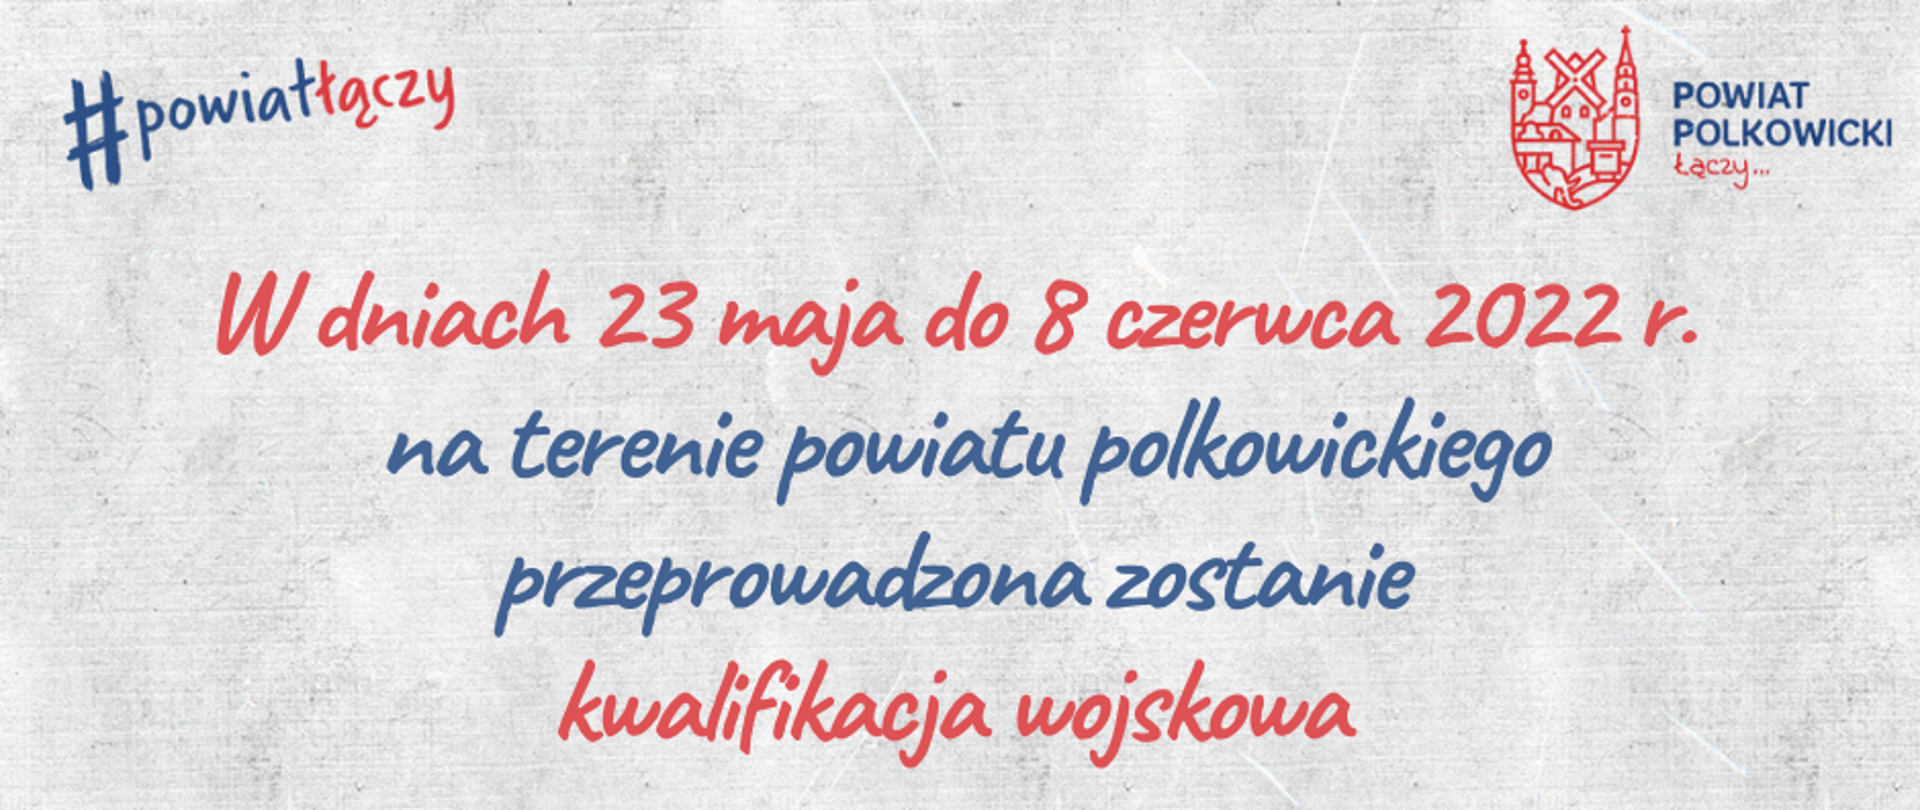 W dniach 23 maja do 8 czerwca 2022 r. na terenie powiatu polkowickiego przeprowadzona zostanie kwalifikacja wojskowa